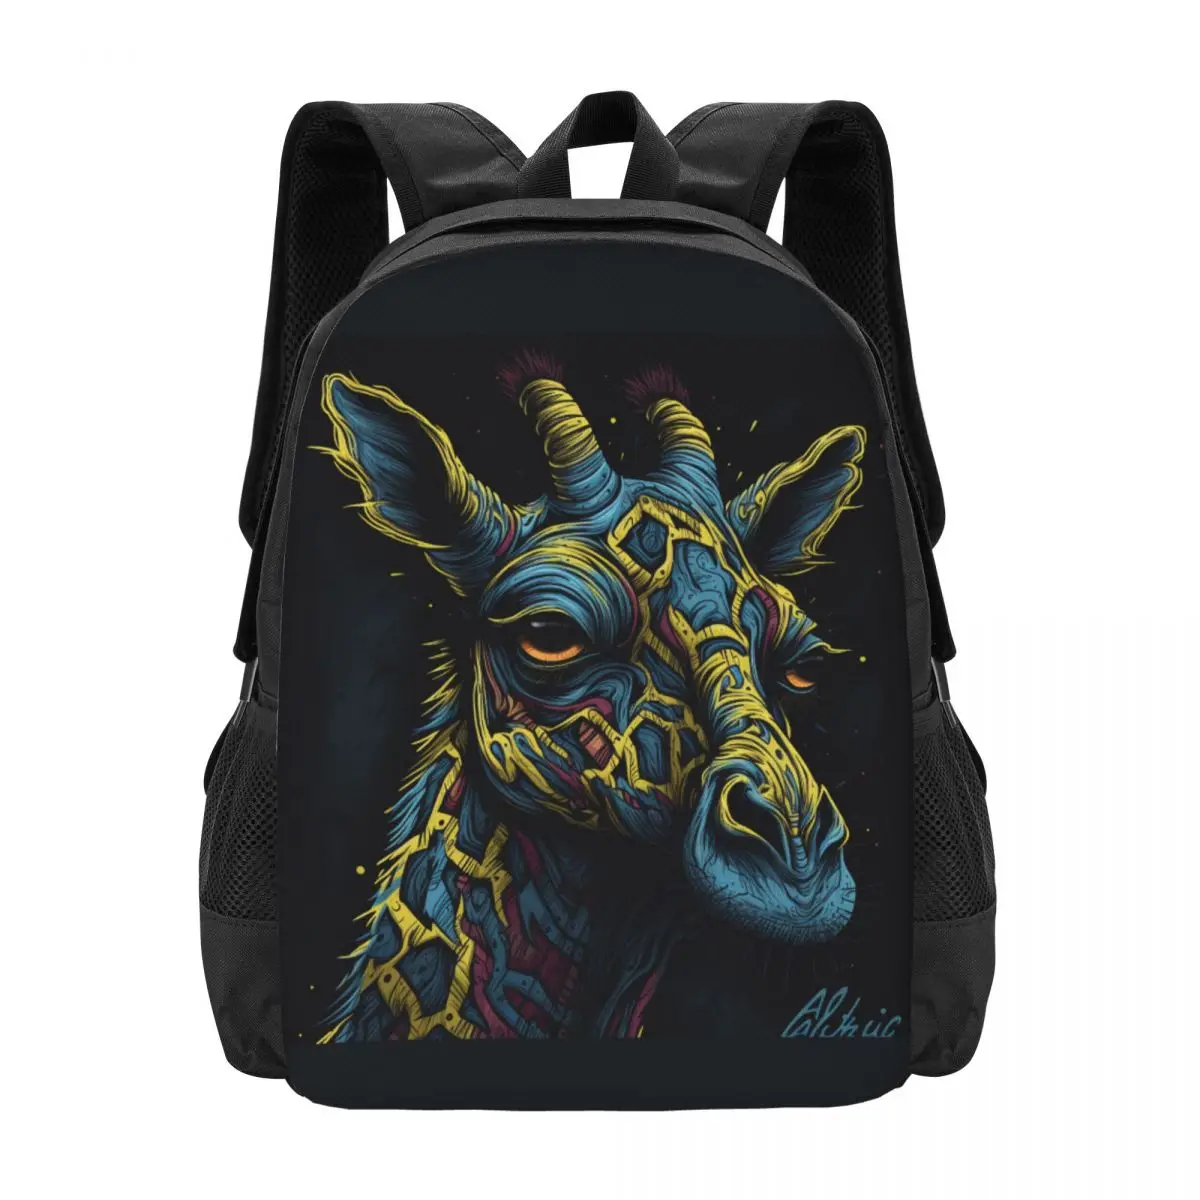 

Giraffe Backpack Zombie Portraits Hyper-Detailed Travel Backpacks Girl Design Pattern High School Bags Funny Rucksack